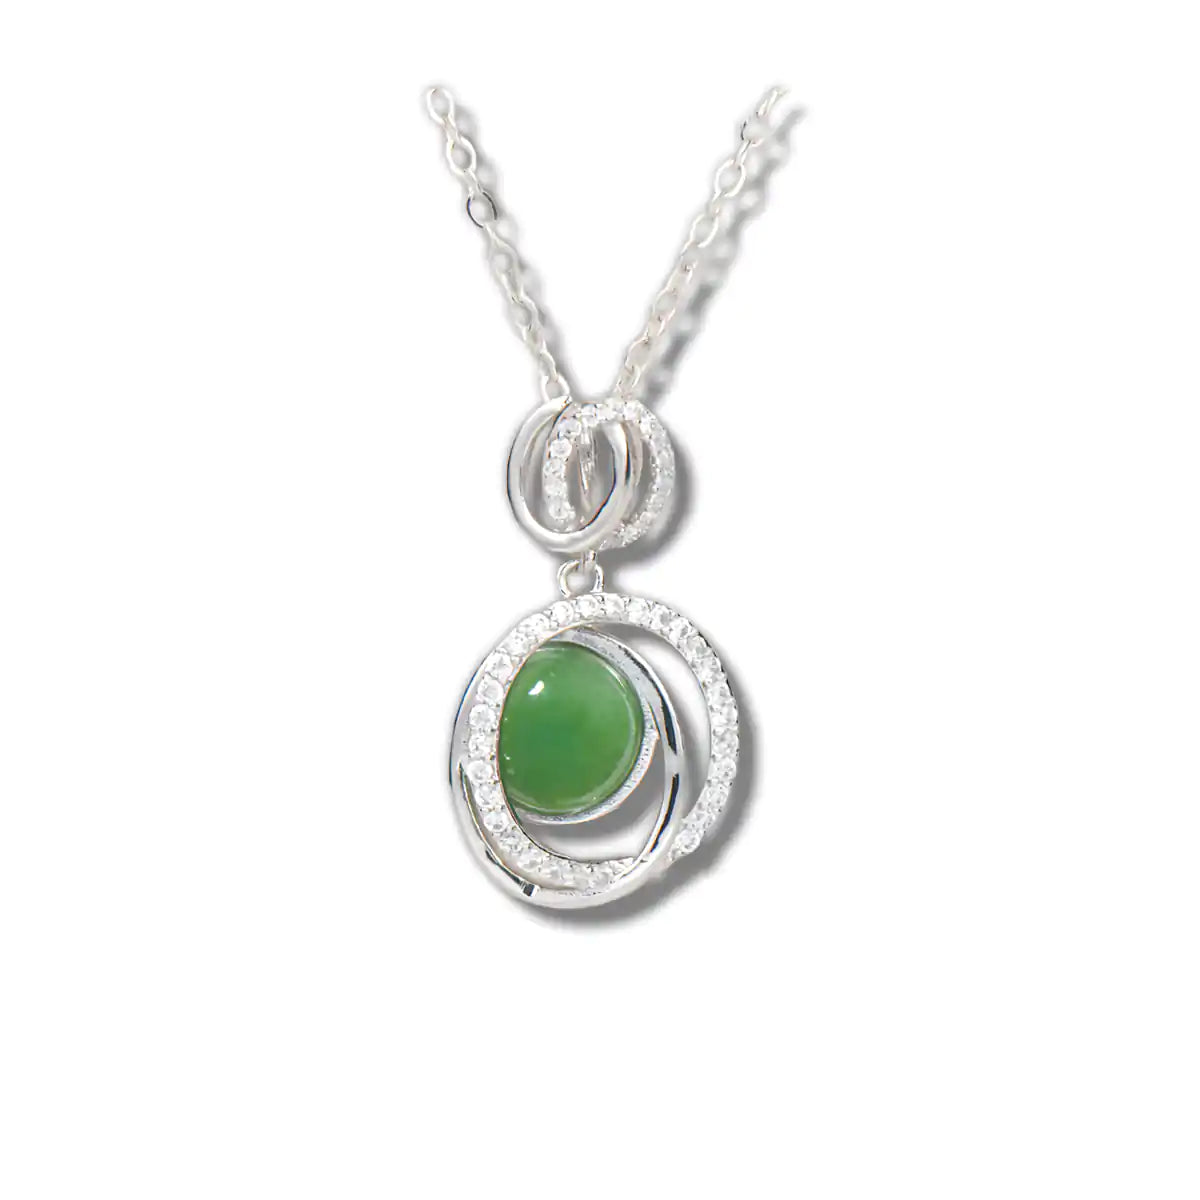 Jade debonair necklace